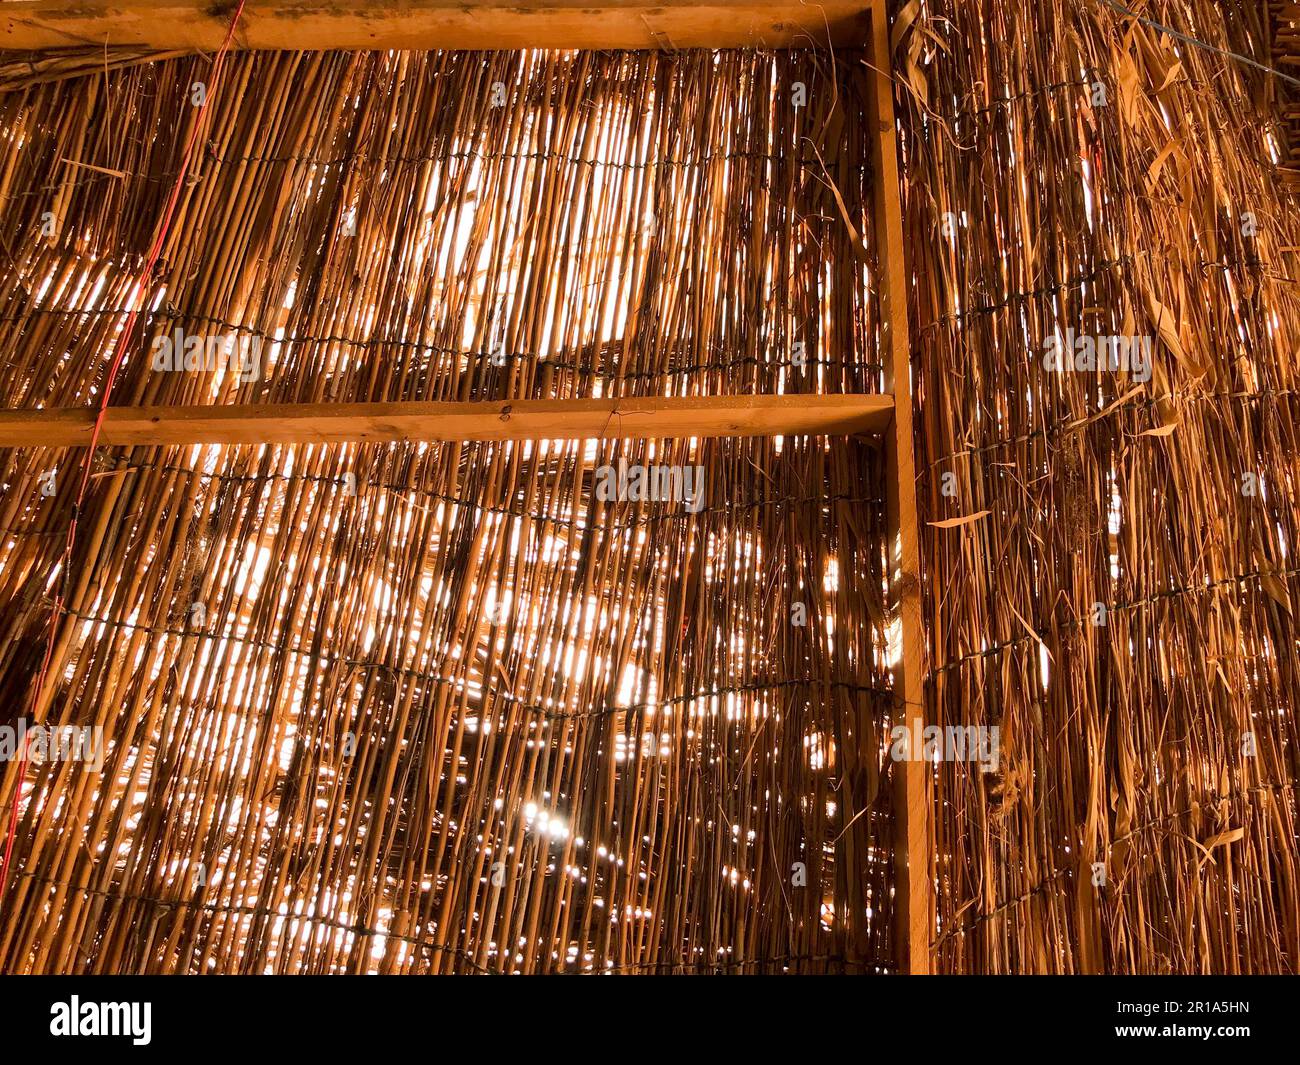 La texture d'une paille naturelle et sèche brun orangé scintillée dans le toit d'un vieux bungalow en chaume. Fond décoratif naturel. Banque D'Images